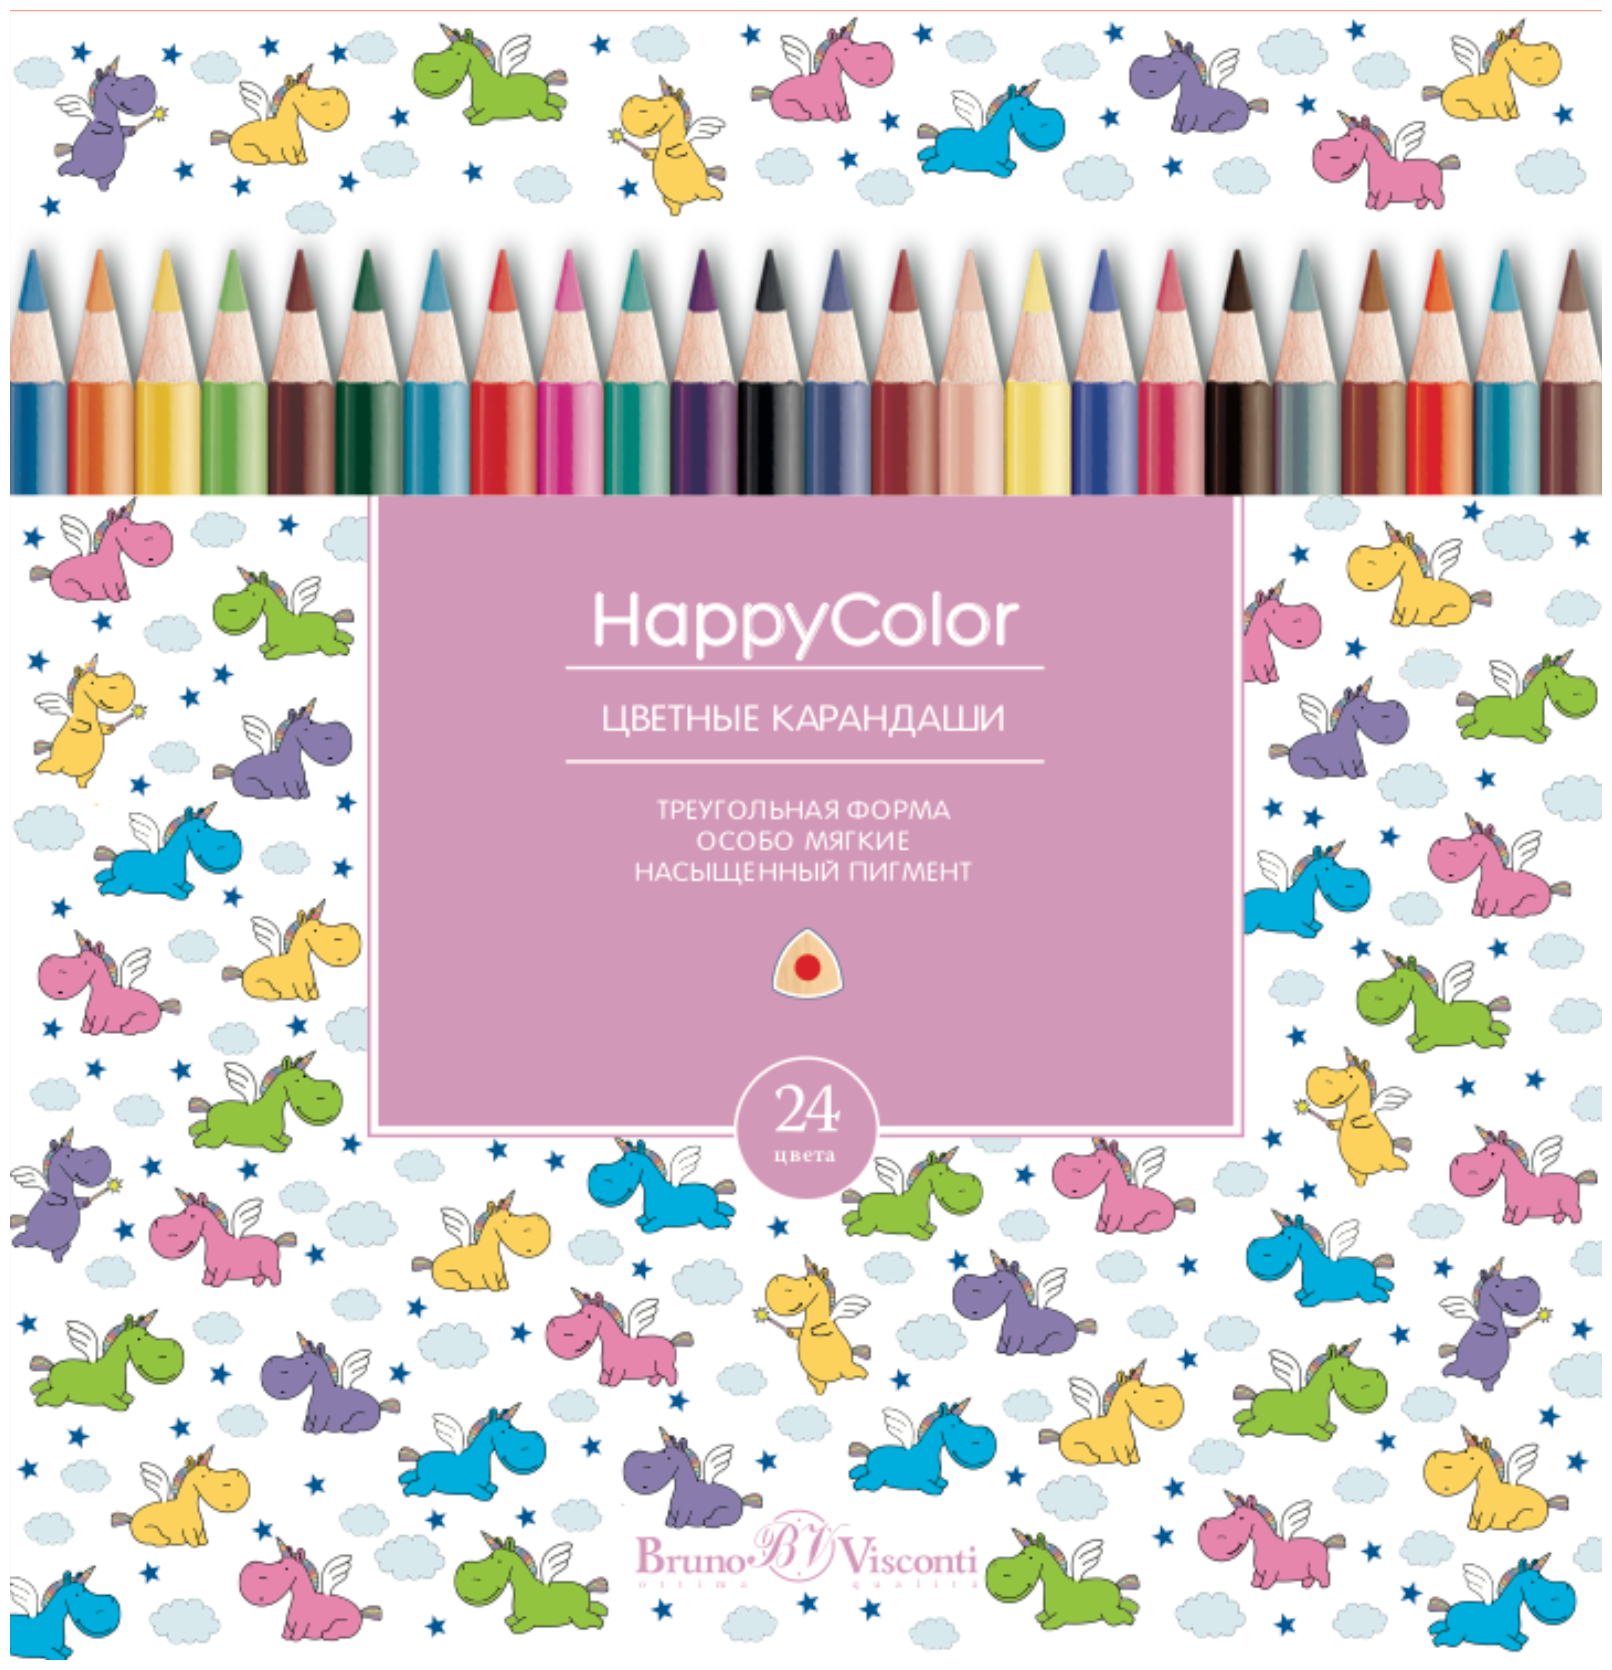 Карандаши BrunoVisconti, цветные, 24 цвета, HappyColor, Арт. 30-0053, упаковка в ассортименте